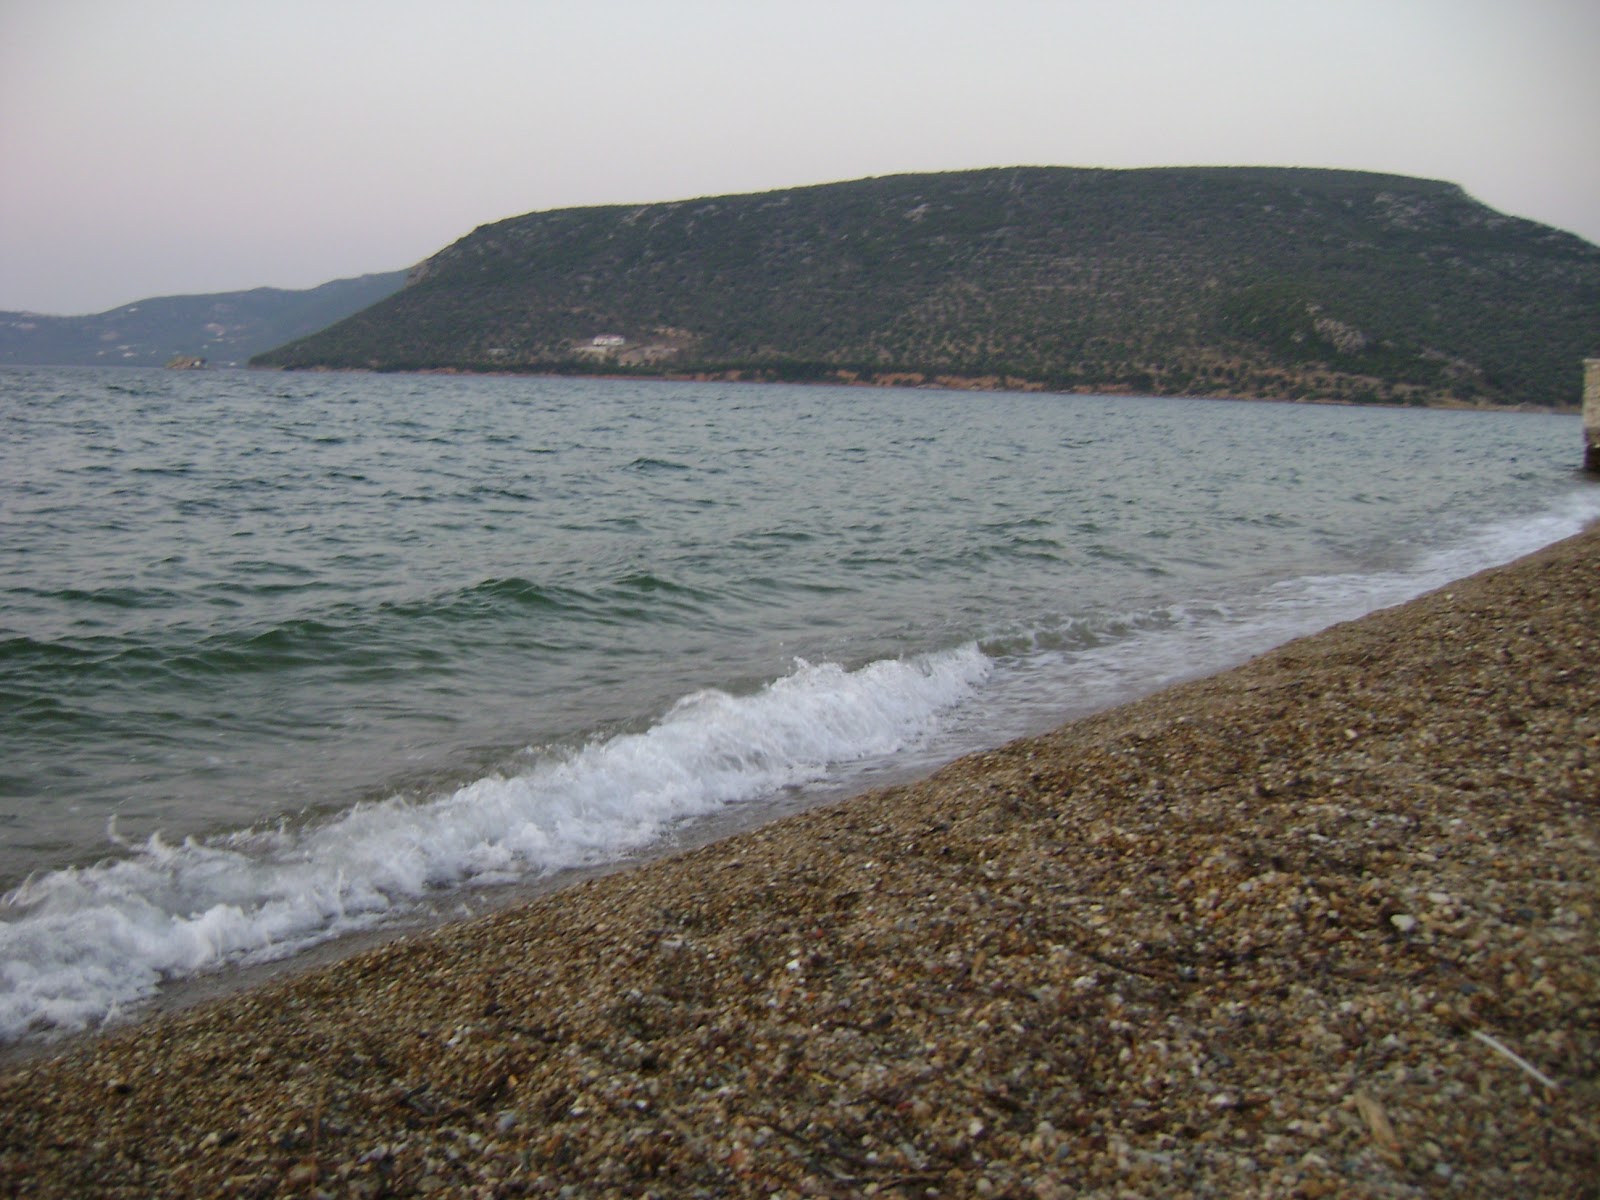 Mitilinis-Skopelou VIII'in fotoğrafı doğrudan plaj ile birlikte